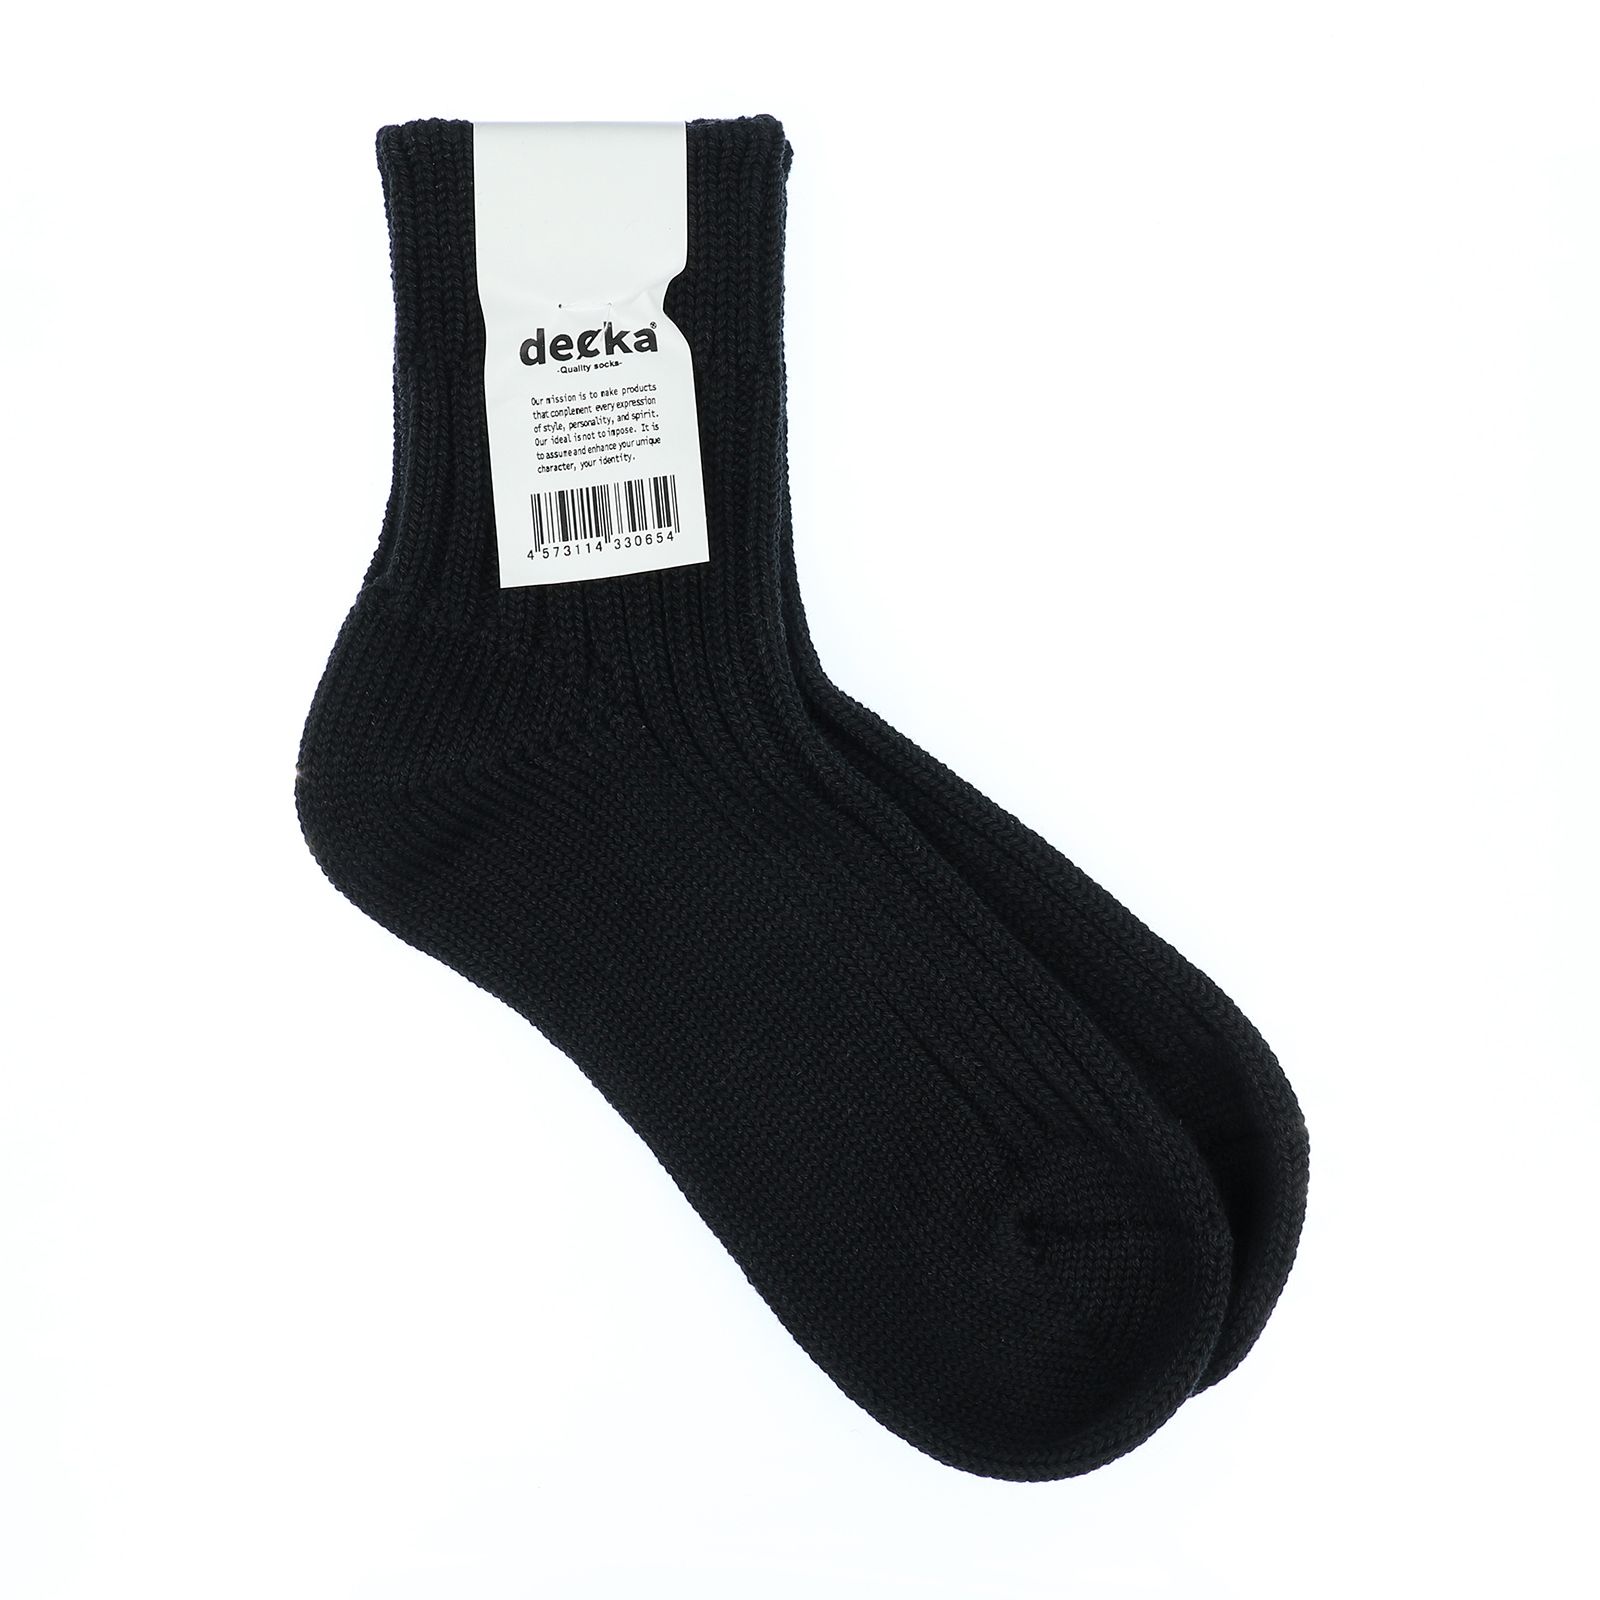 decka quality socks - Low Gauge Rib Socks Short Length ネオン 